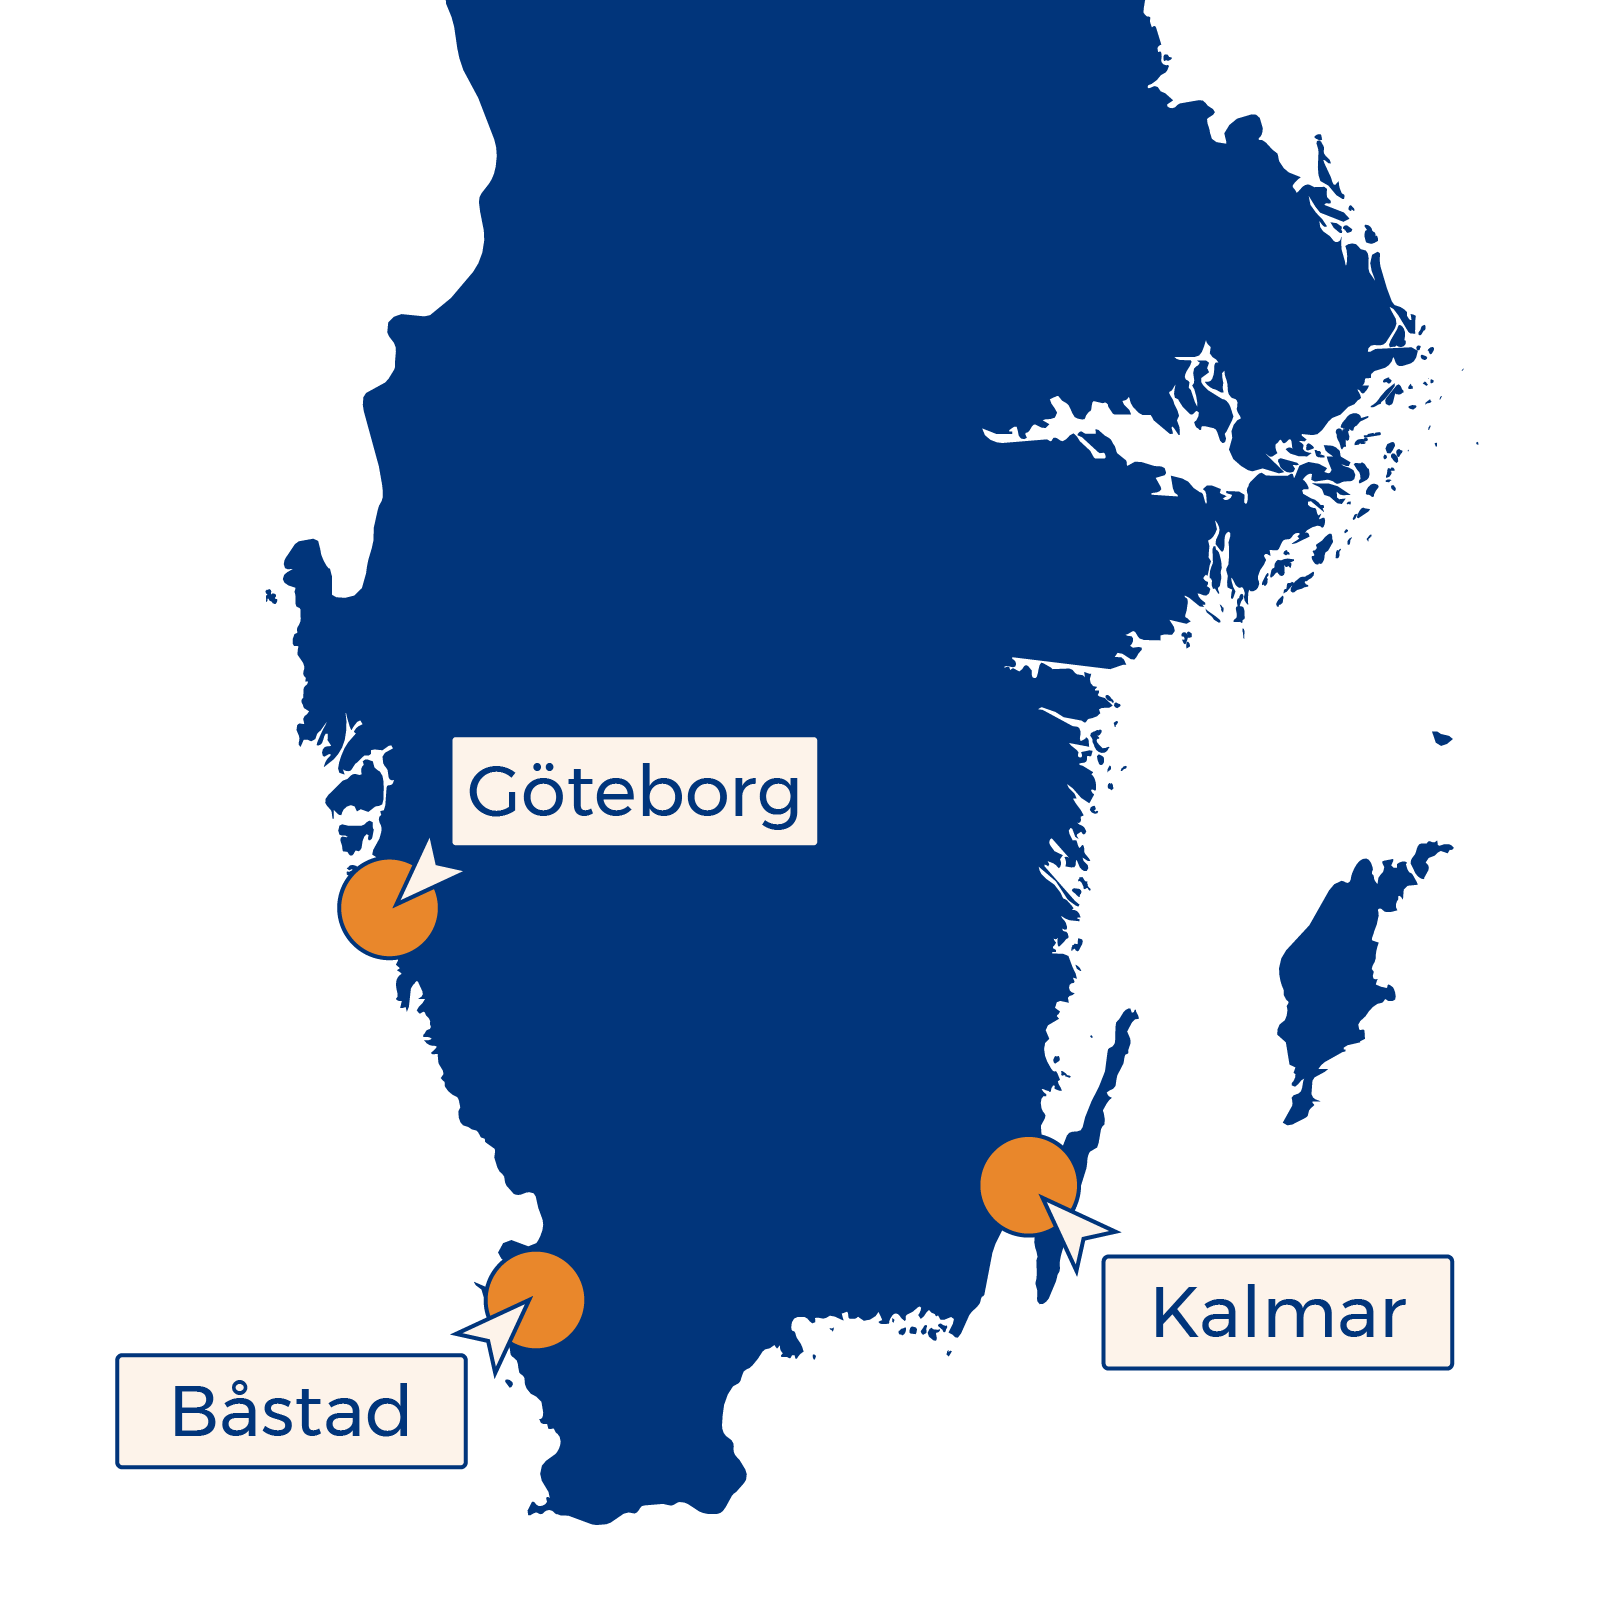 På dessa orter finns PixelPappa, Båstad, Kalmar, Göteborg